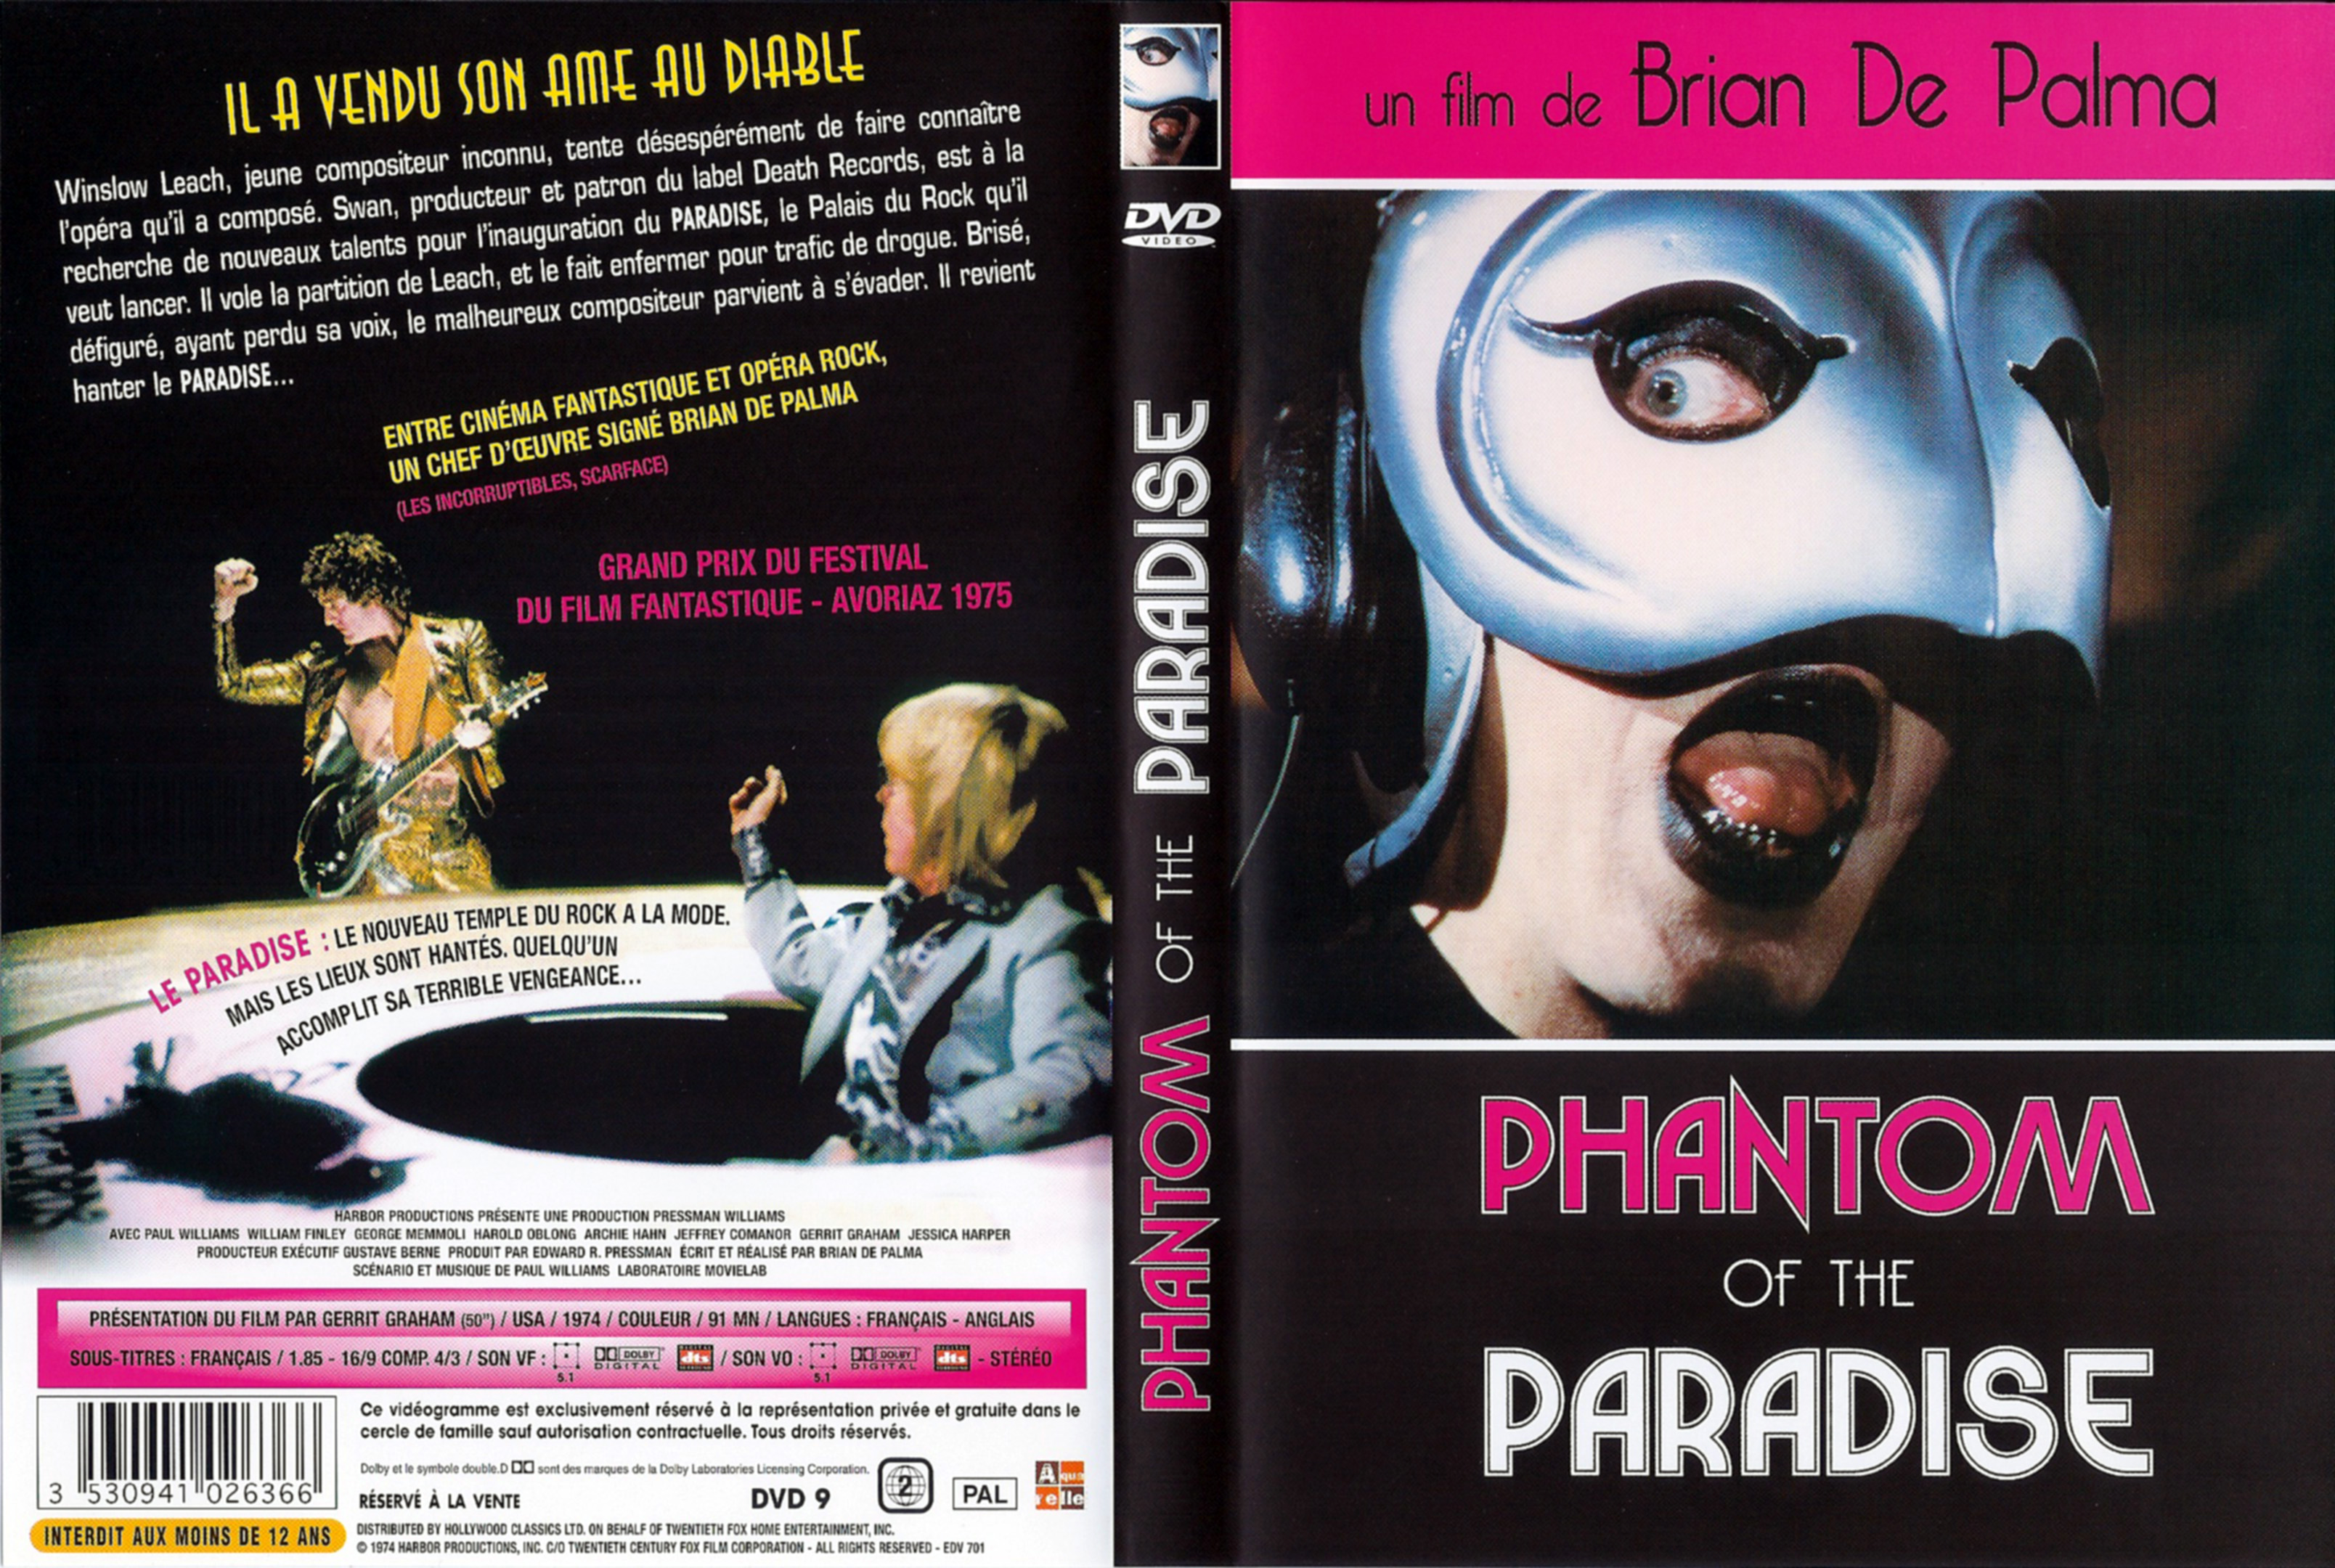 Jaquette DVD Phantom of the paradise v3